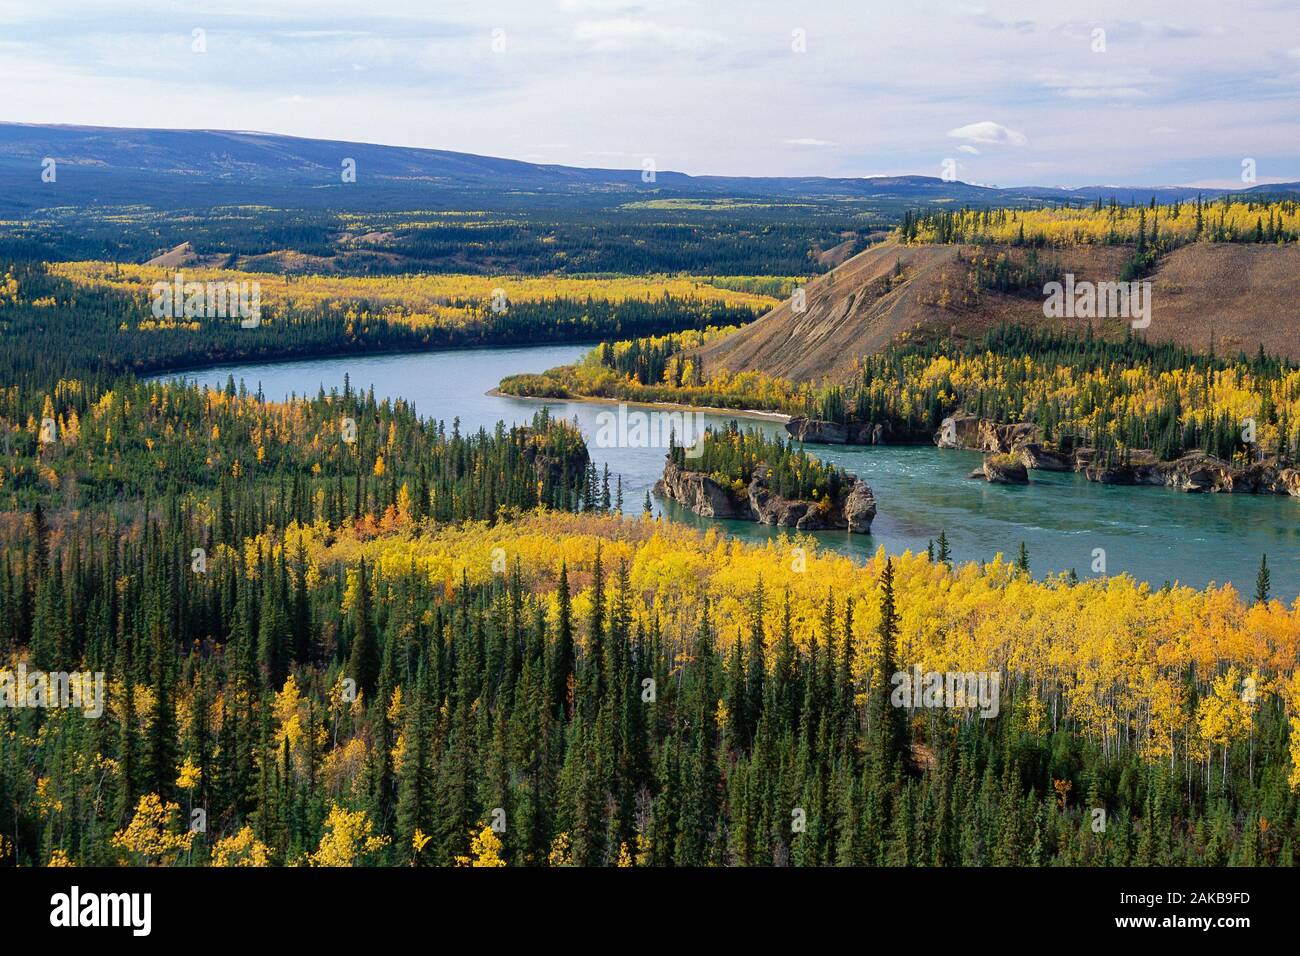 Five Fingers Rapids, territoire du Yukon, Canada Banque D'Images